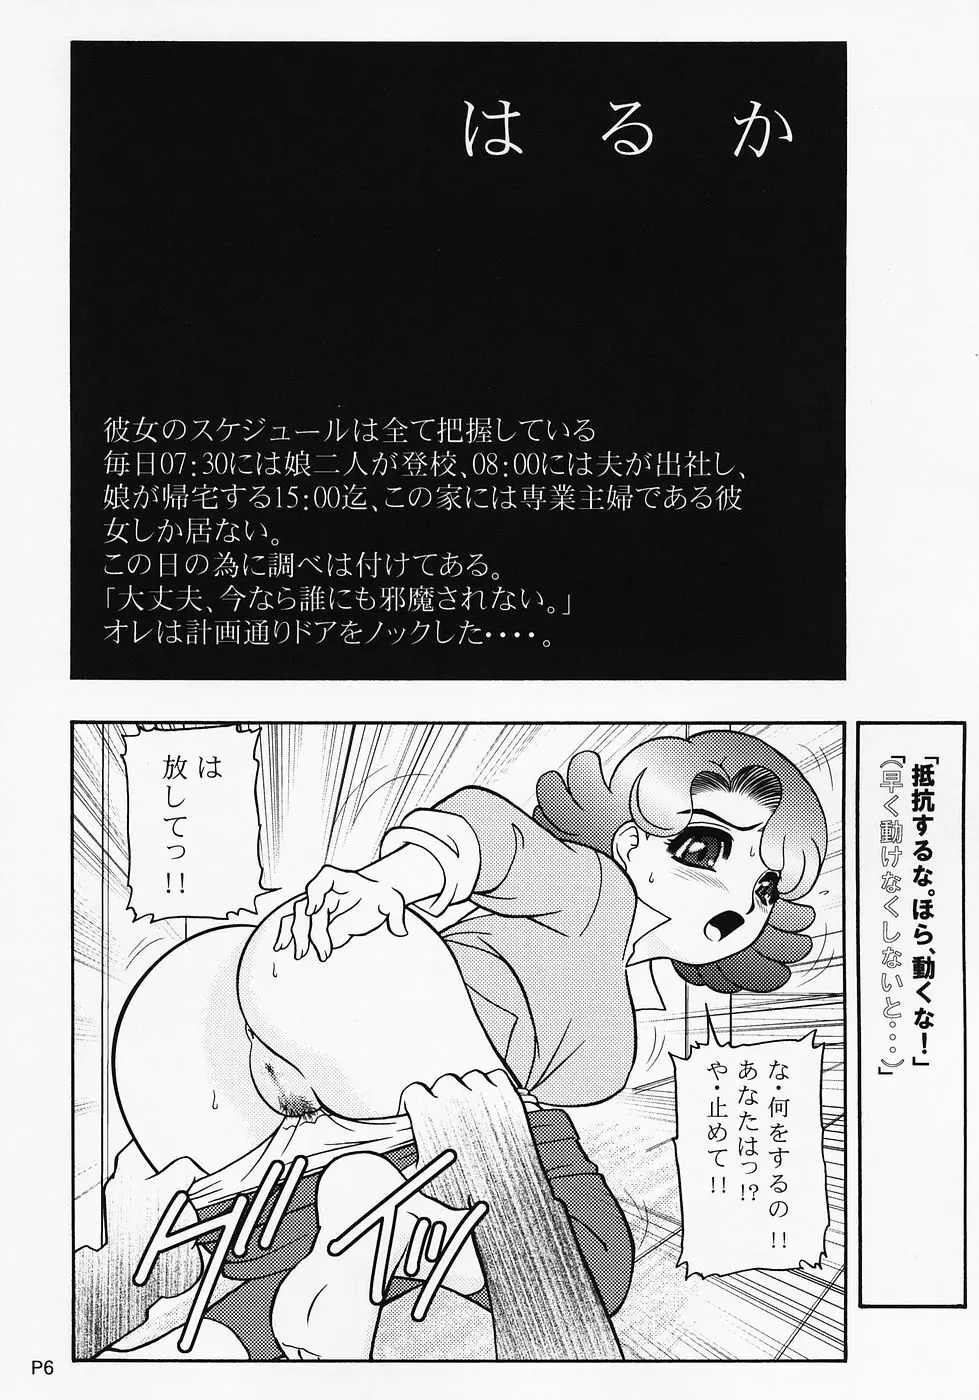 キャラ・エミュW☆B001character emulation 5ページ